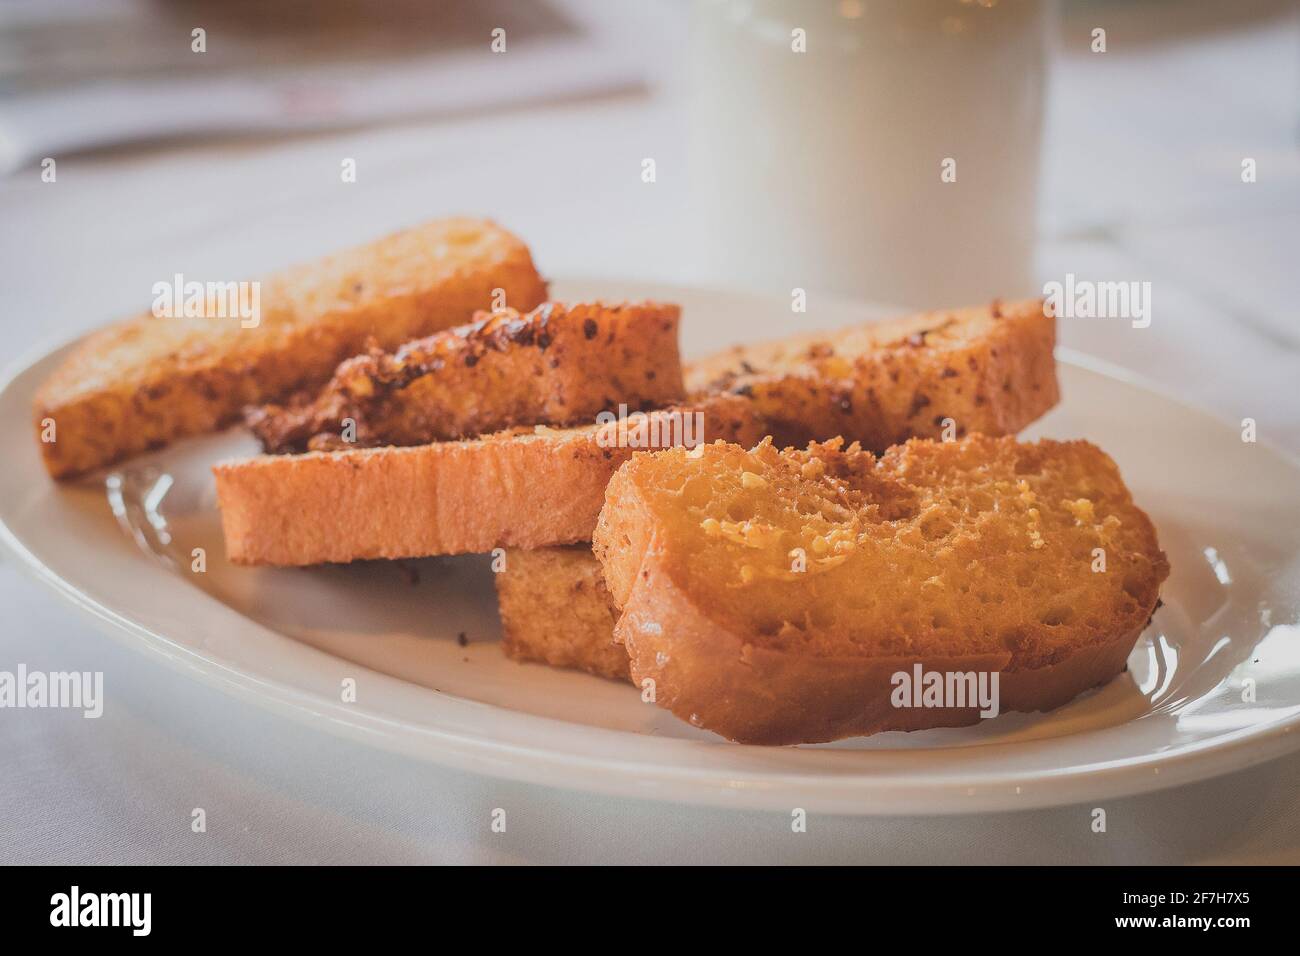 Scheiben gebratenes Brot auf einem weißen Teller. Gemeinsames Frühstück in bestimmten Teilen europas, auch bekannt als Snite. Stockfoto